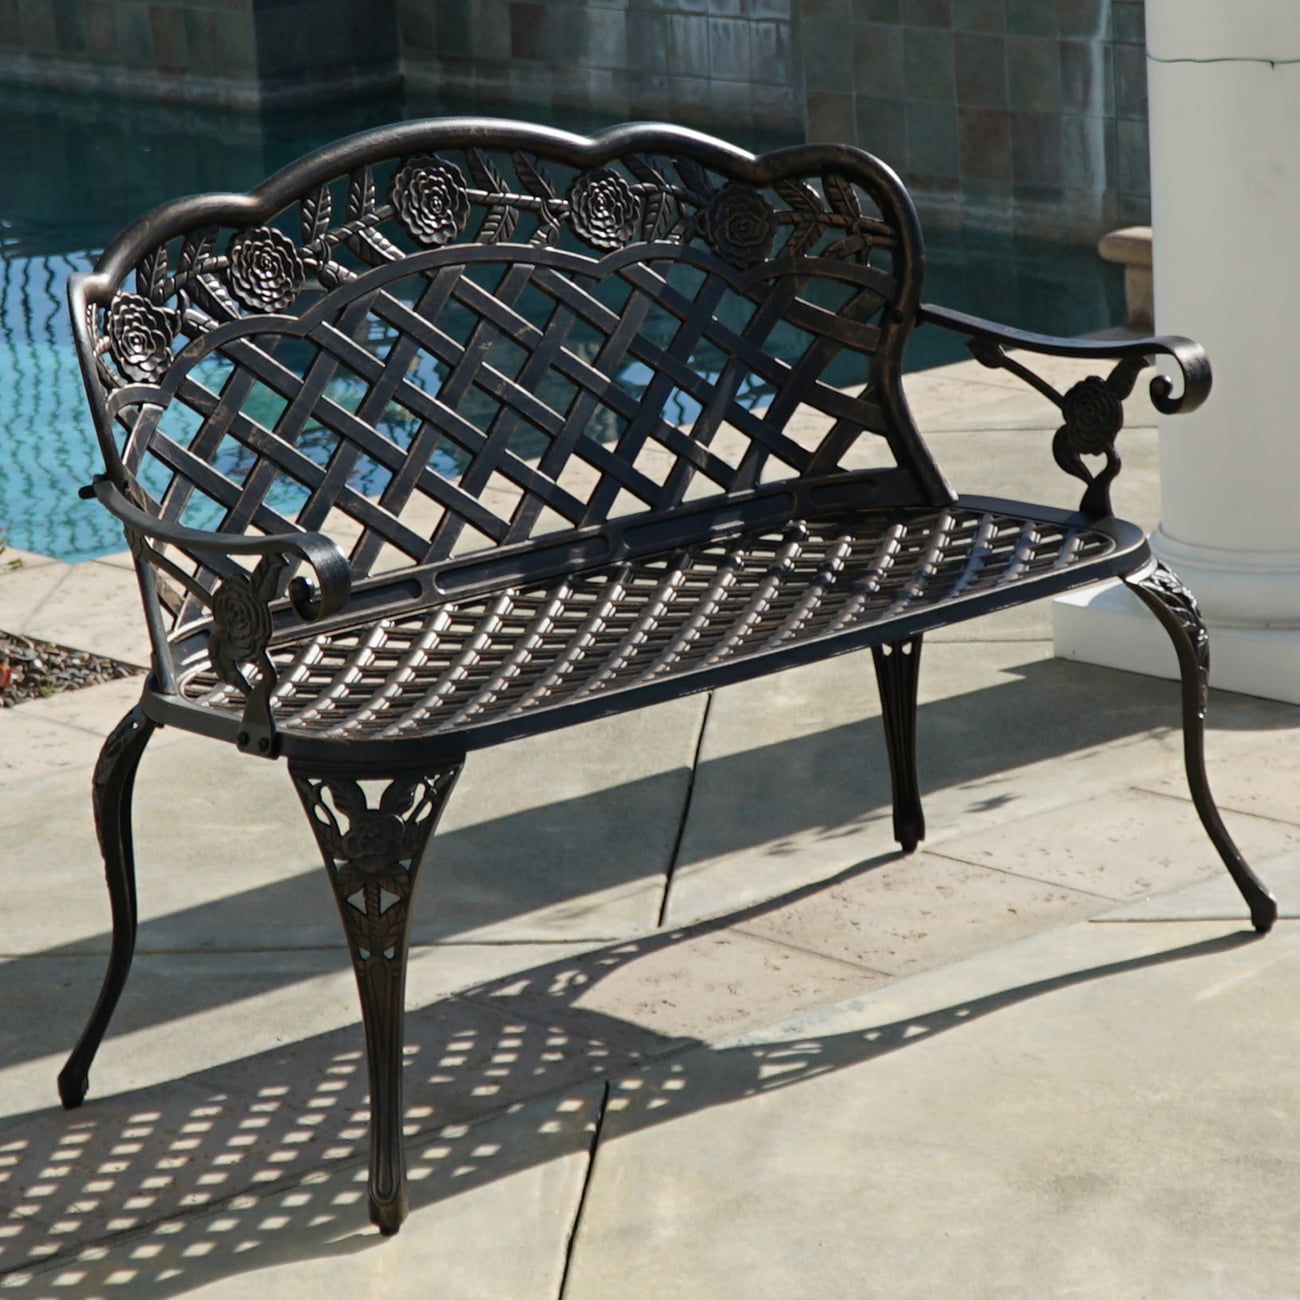 belleze outdoor aluminum cast garden bench, bronze - walmart